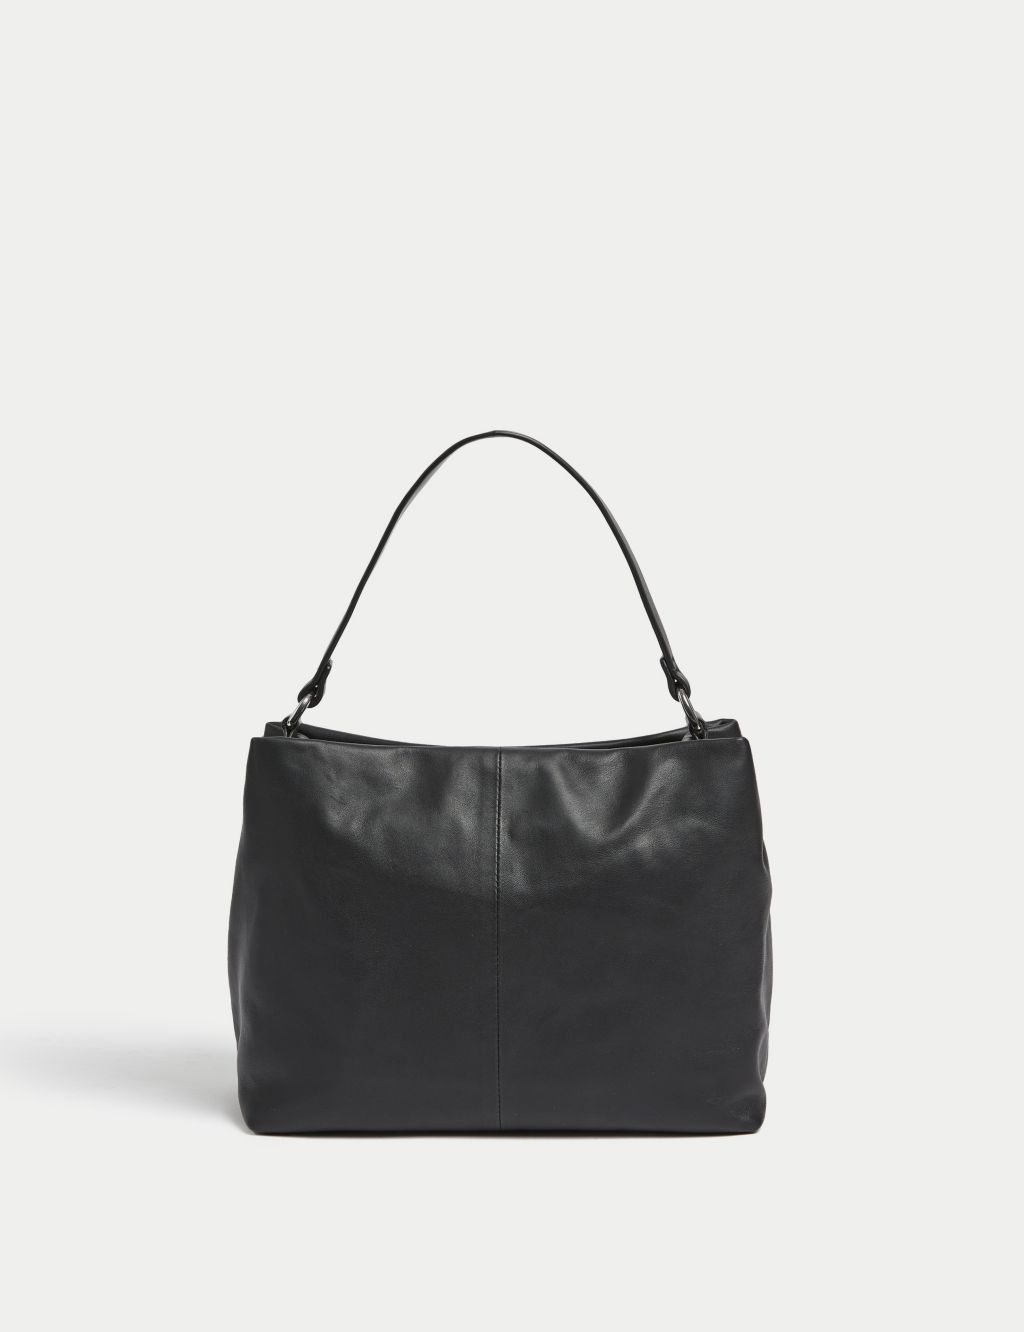 Leather Top Handle Shoulder Bag image 3